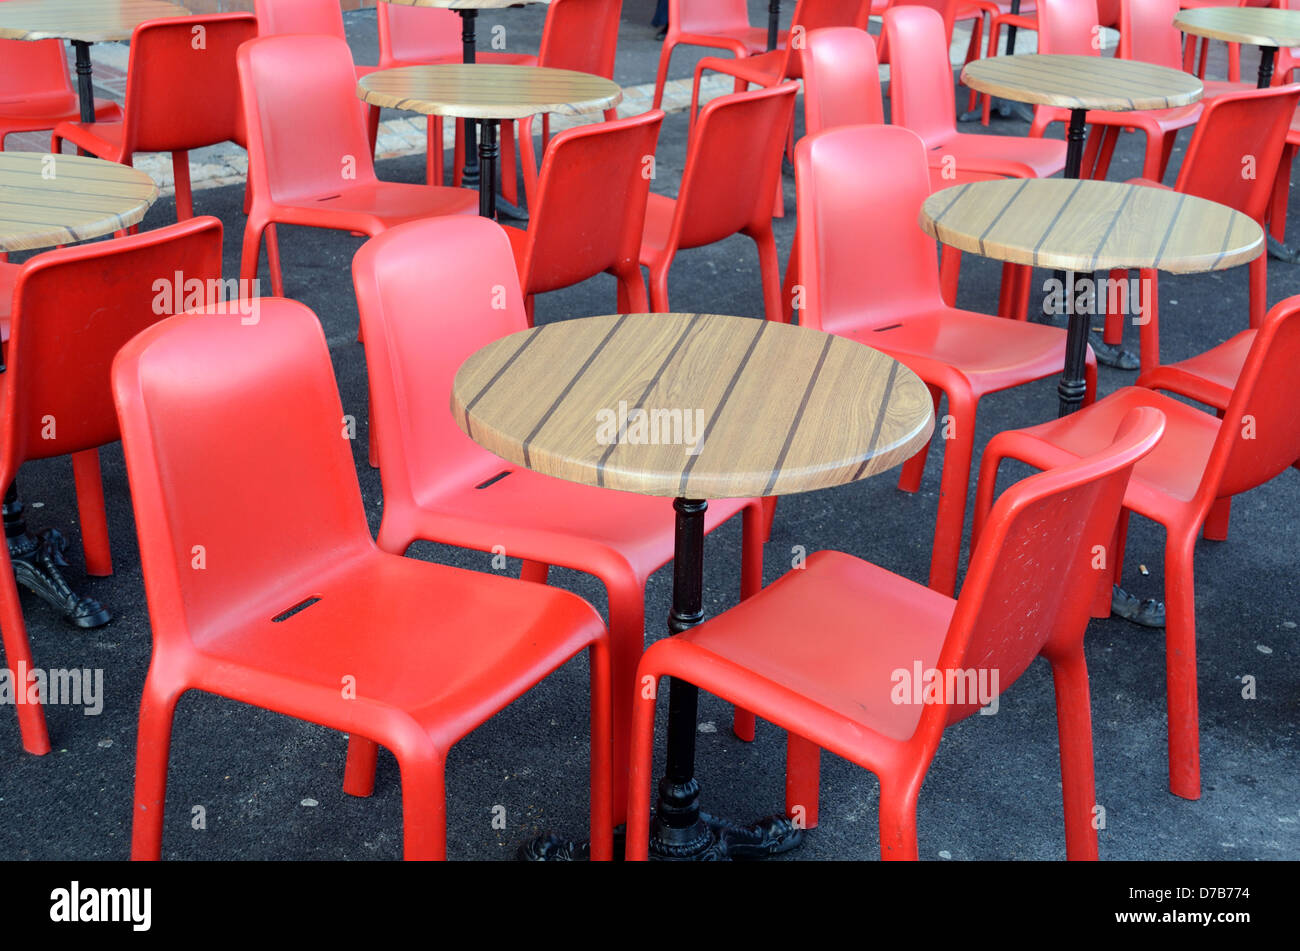 Mesas vacias de sillas fotografías e imágenes de alta resolución - Alamy